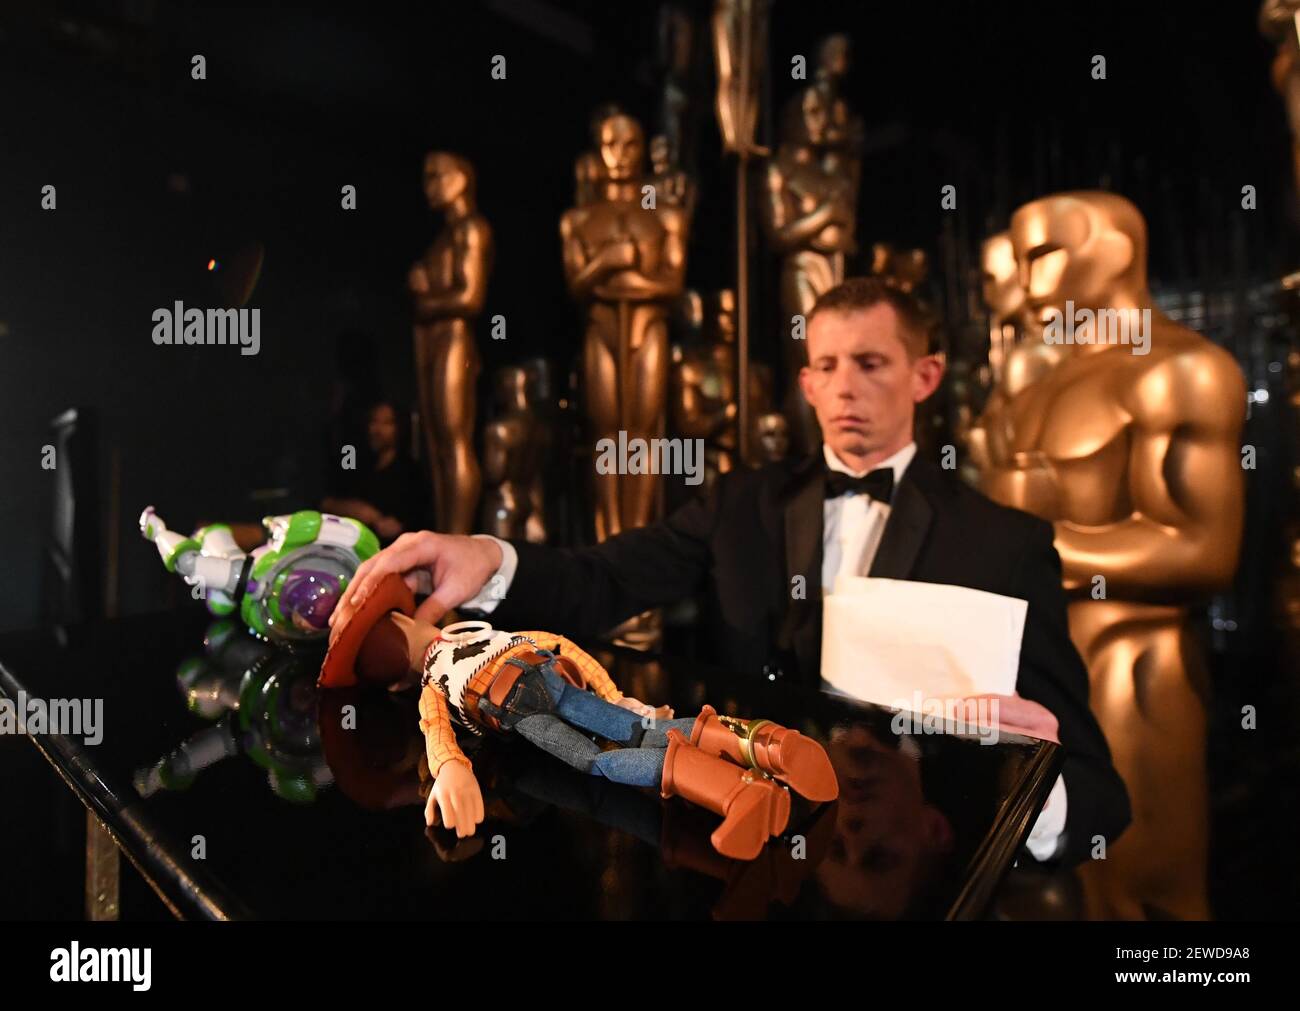 28 de febrero de 2016; Hollywood, CA, EE.UU.; Los personajes de Toy Story Buzz Lightyear y Woody están preparados entre bastidores durante los premios anuales de la Academia 88th en el Dolby Theatre. Crédito obligatorio: Red HOY Robert Hanashiro-USA Foto de stock